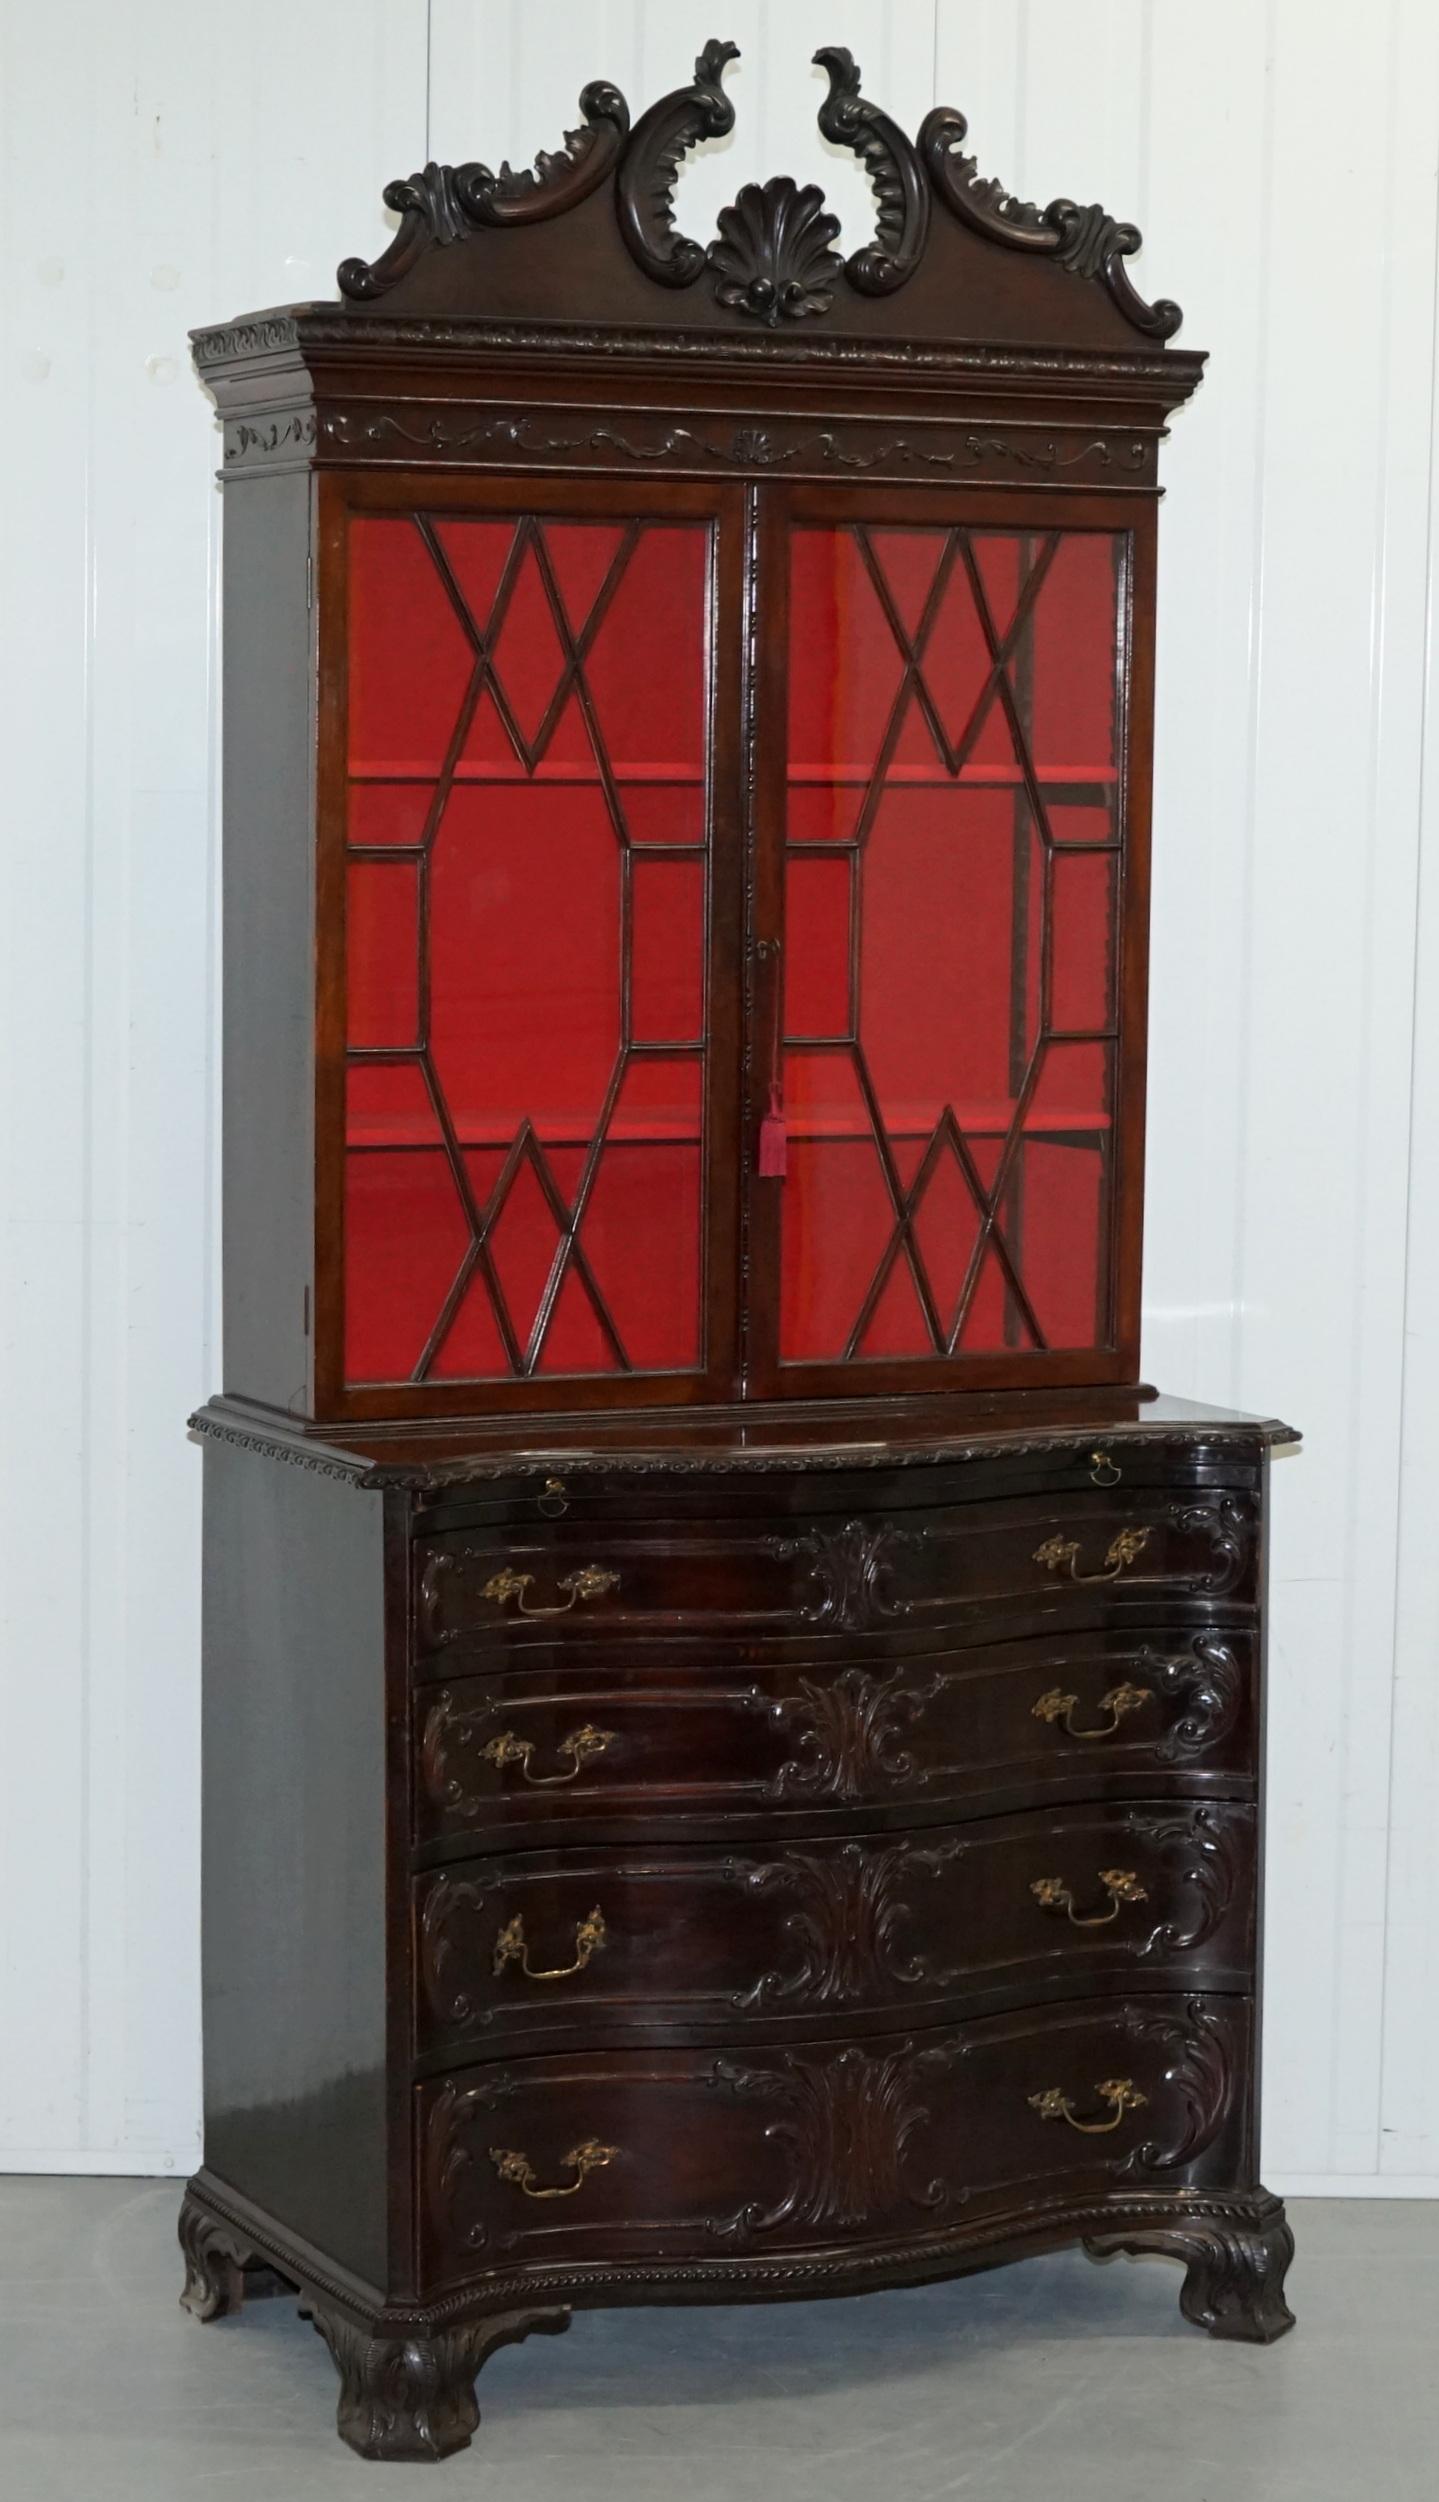 Wir freuen uns, diese atemberaubende George III Thomas Chippendale Stil Mahagoni Bücherregal auf Serpentine Kommode zum Verkauf anbieten

Ein prächtiger Fund, wirklich atemberaubend, nach Originalstücken von Thomas Chippendale, um 1800.

Die